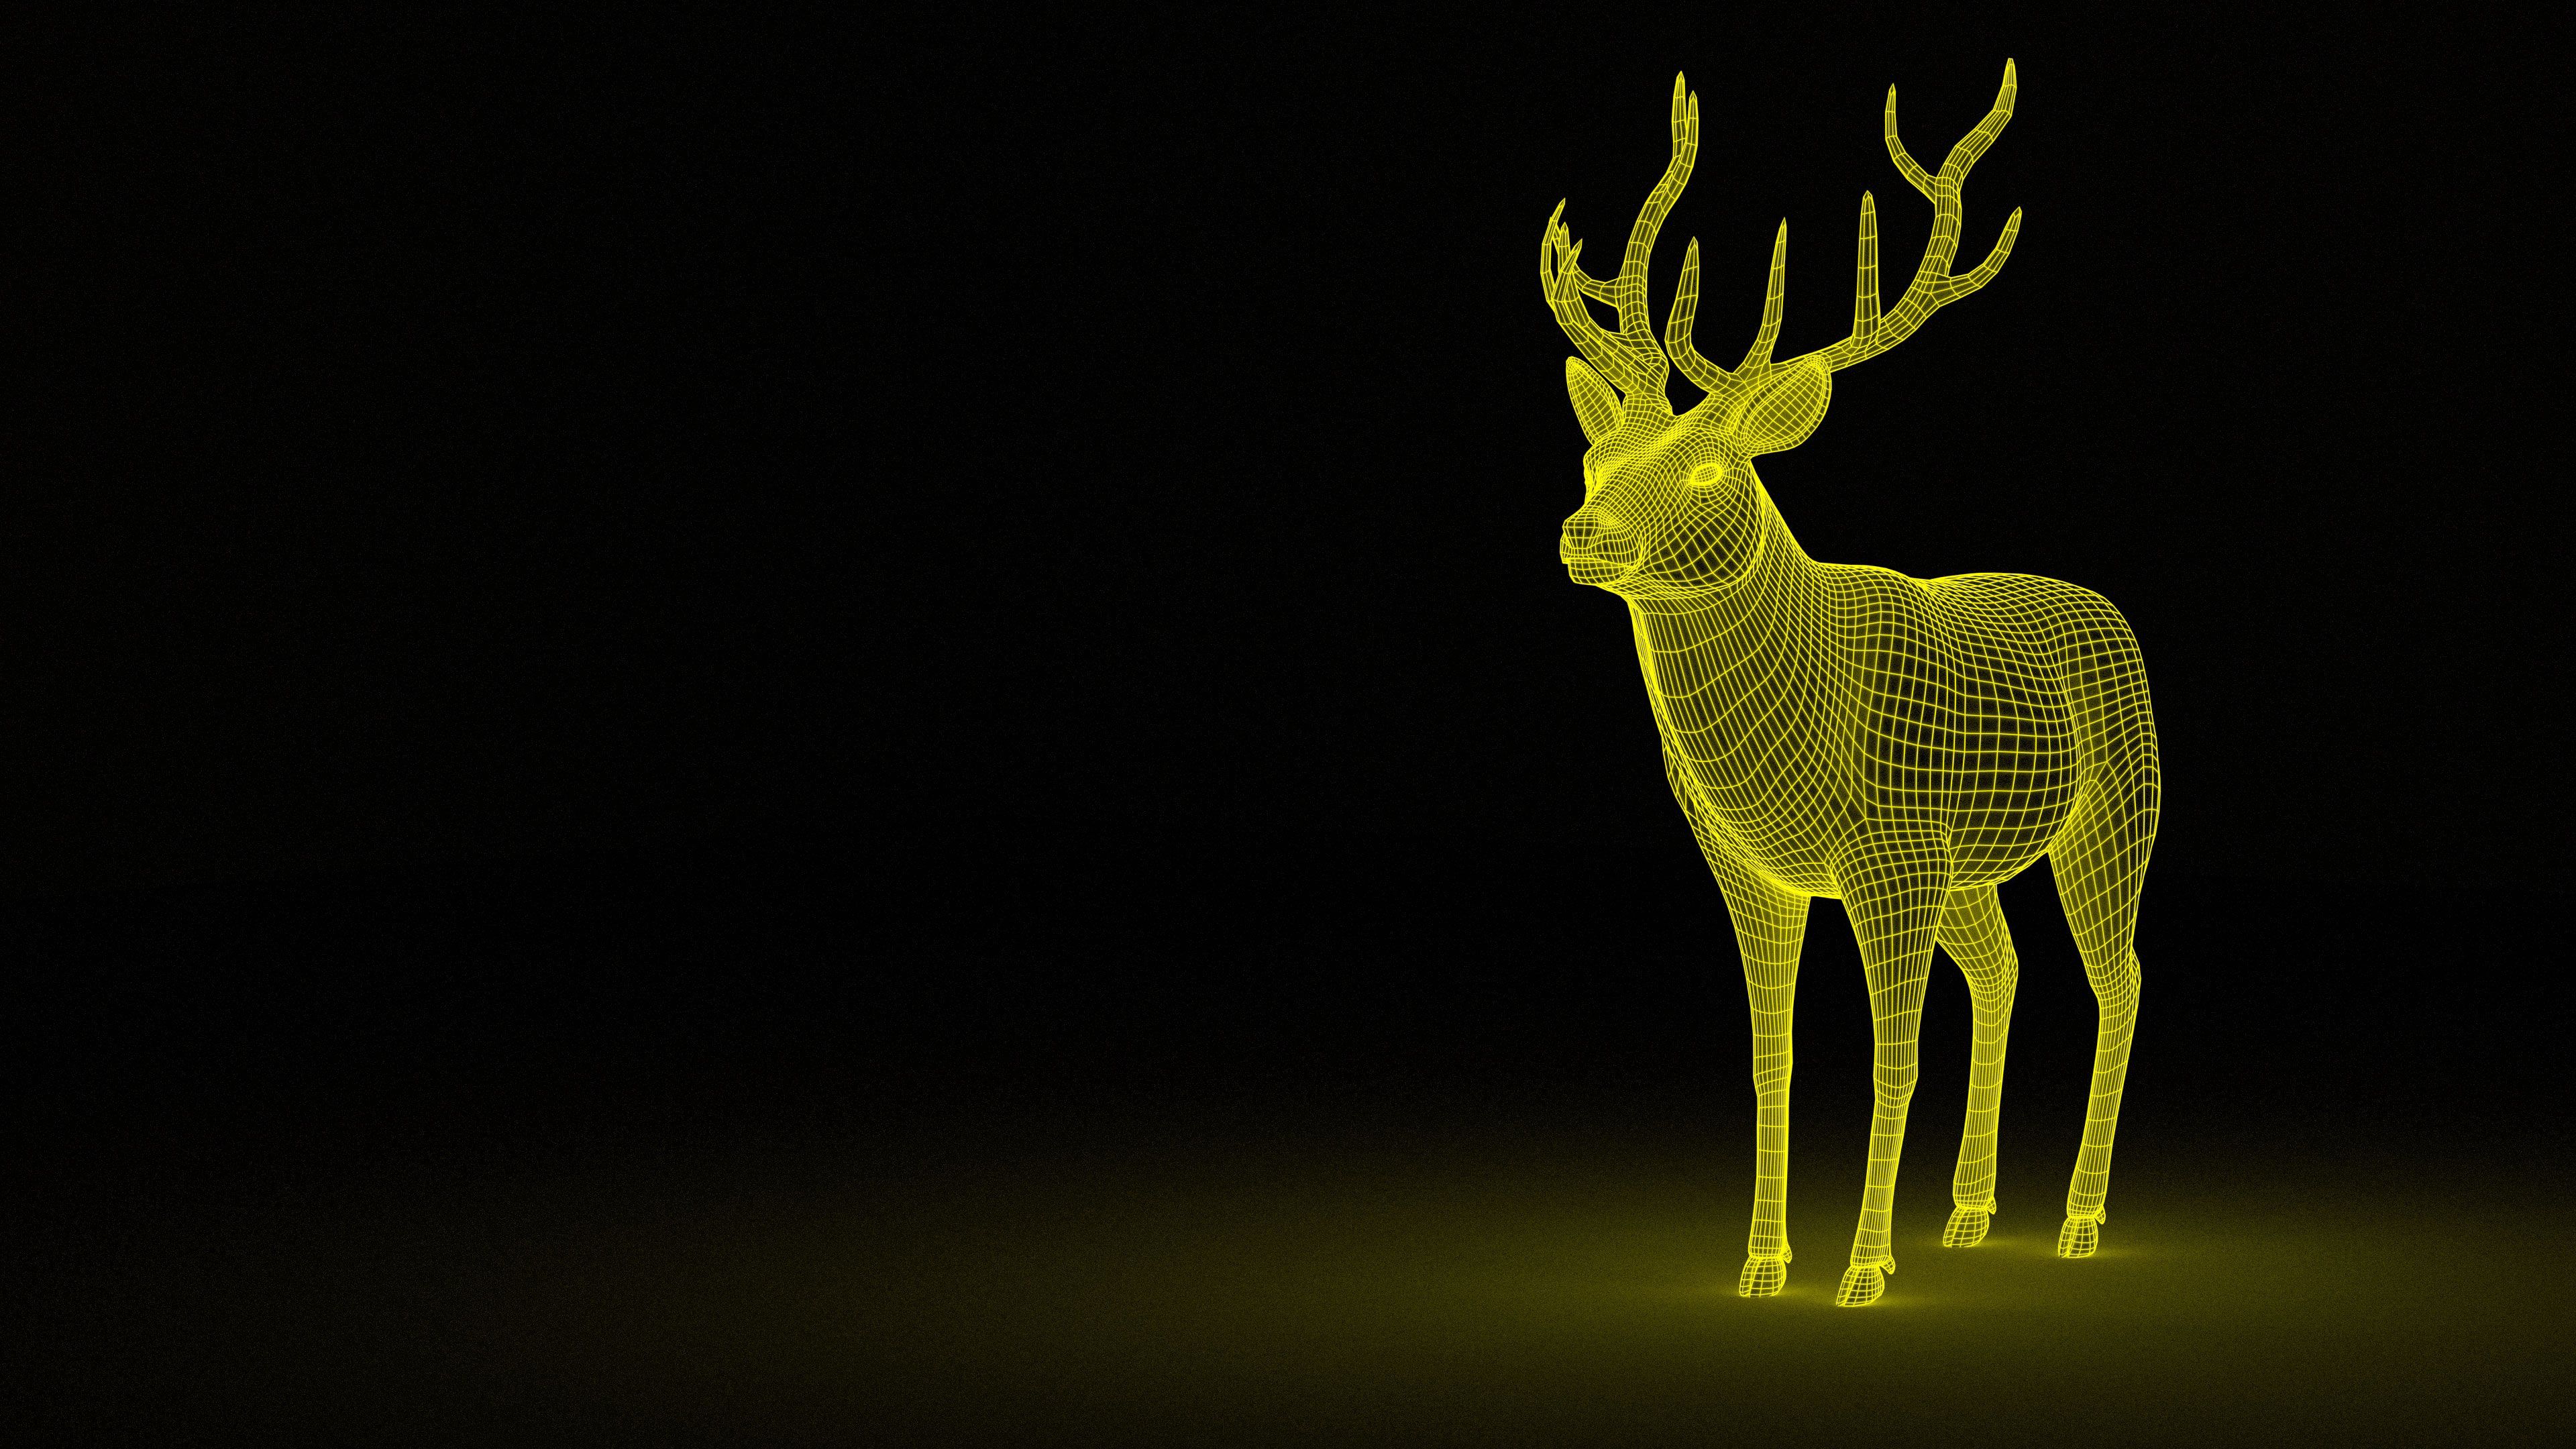 deer, abstract, grid, backlight, illumination Image for desktop